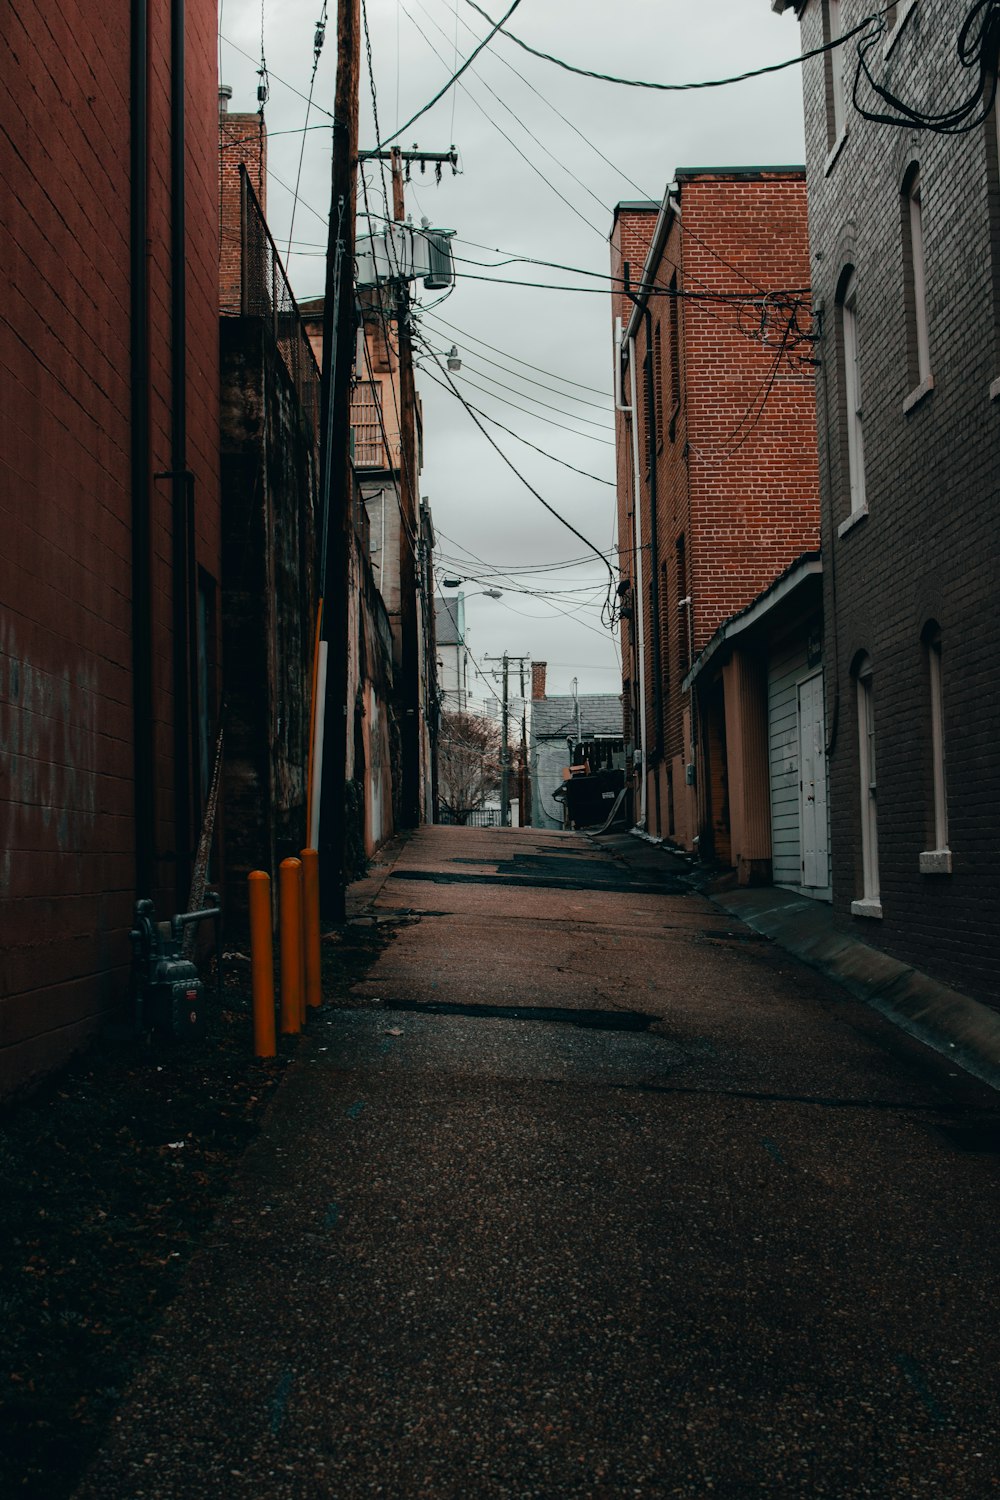 empty street between brown brick buildings during daytime